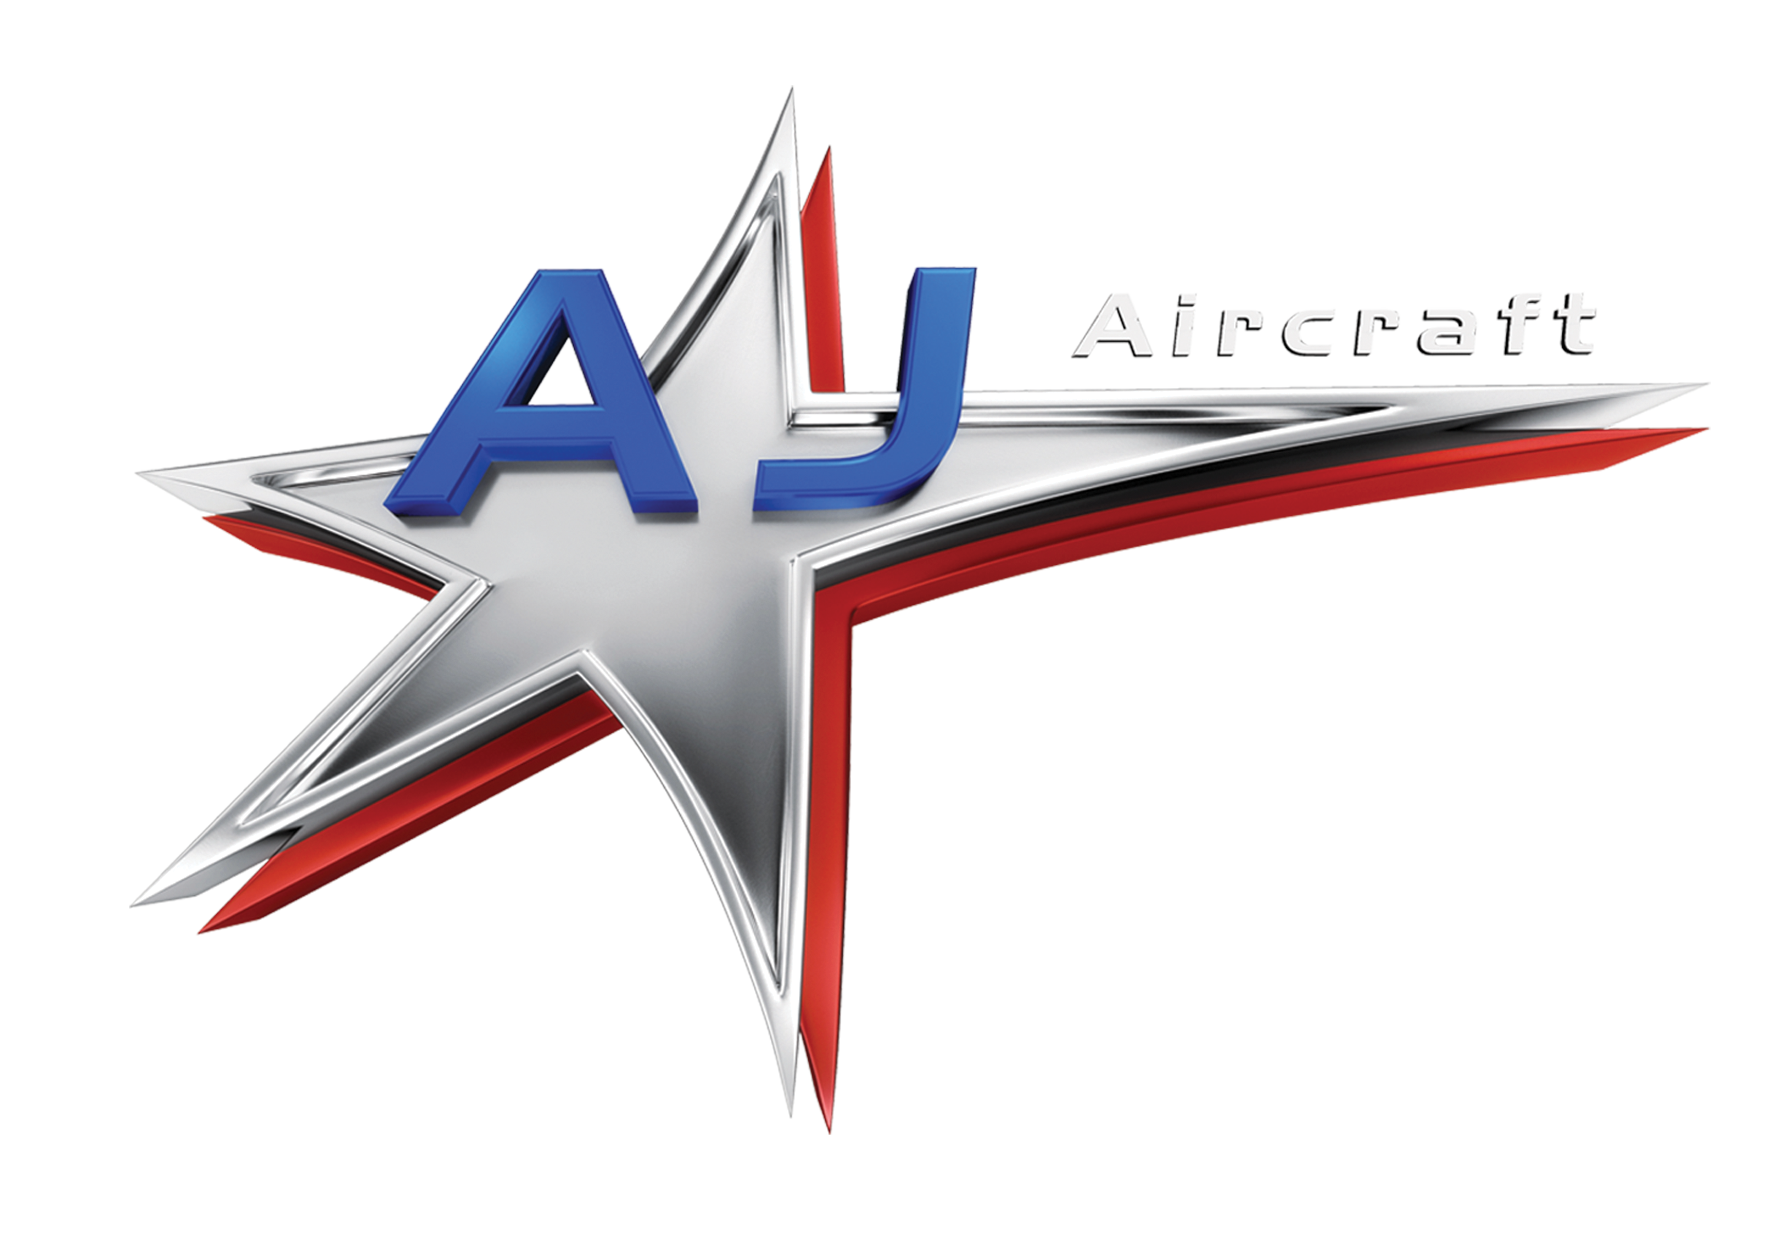 AJ Aircraft